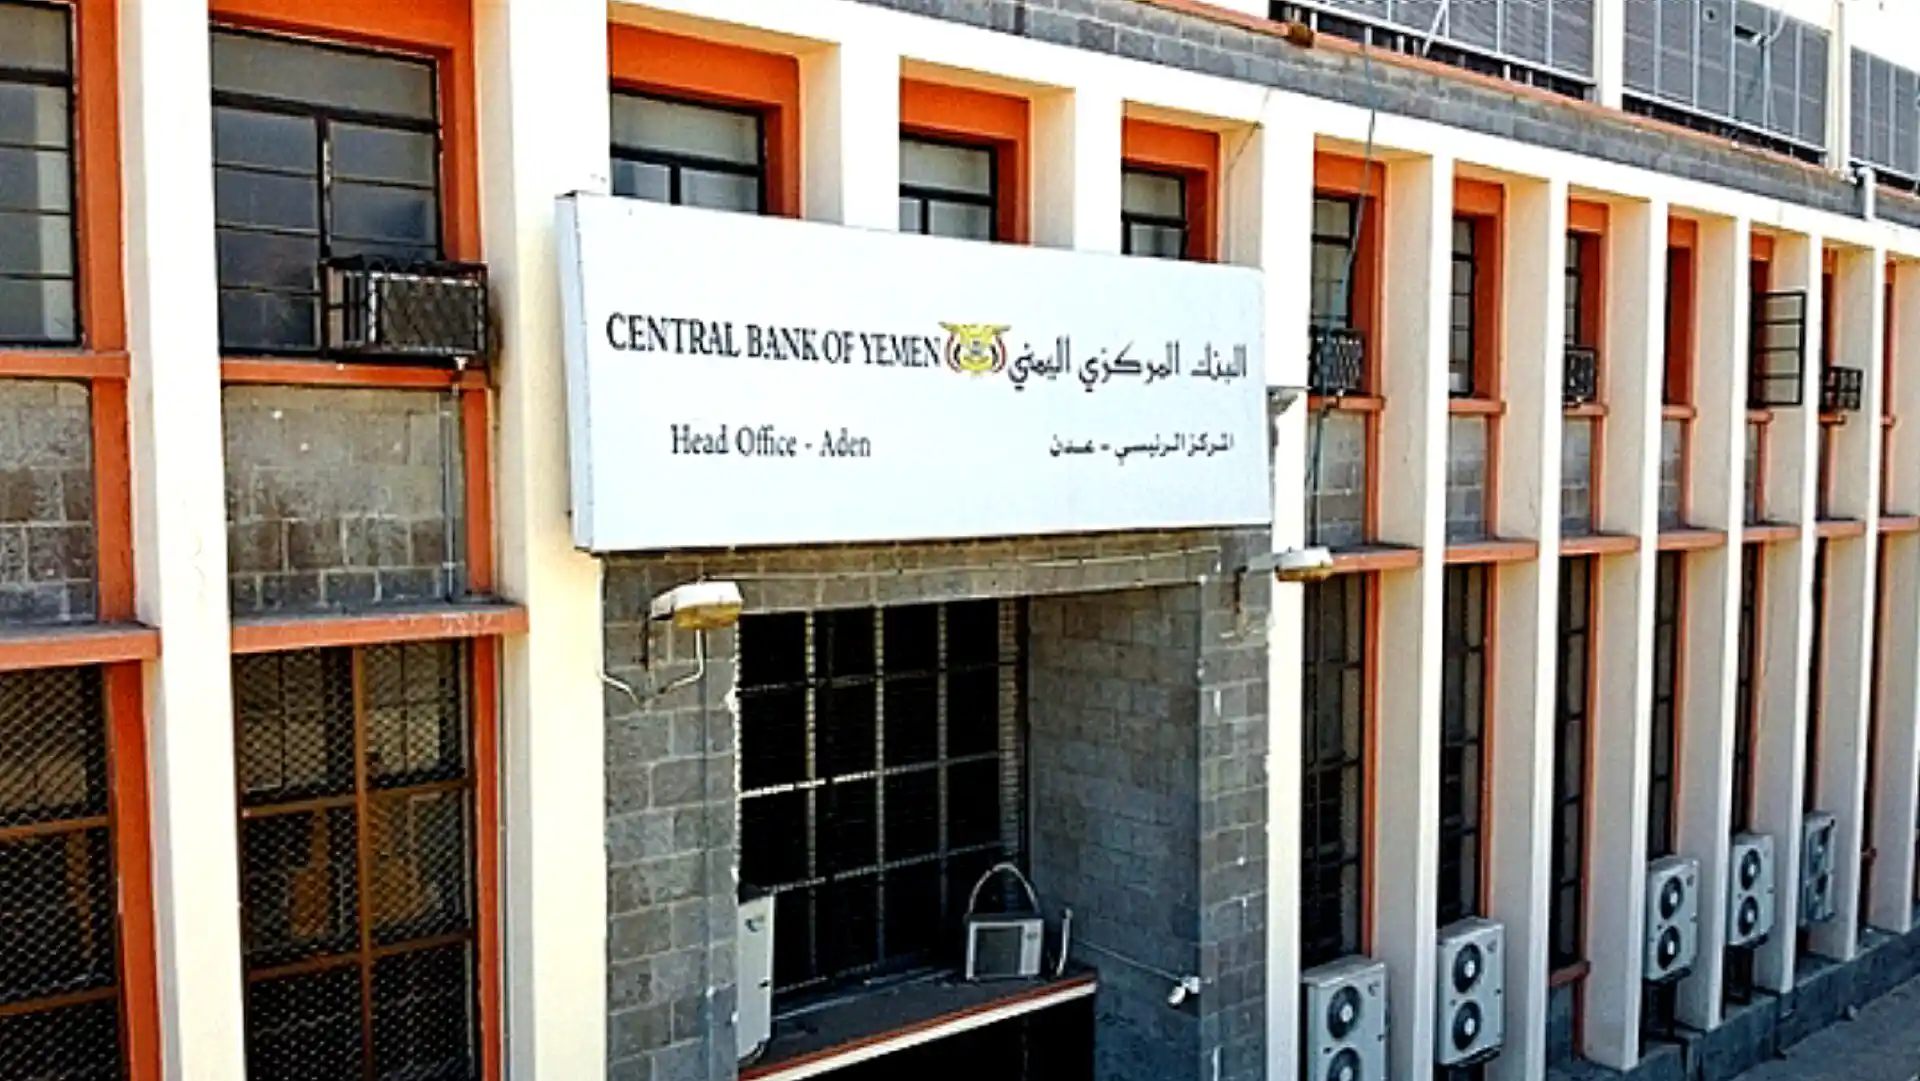 تحذير هام من البنك المركزي اليمني لشركات الصرافة